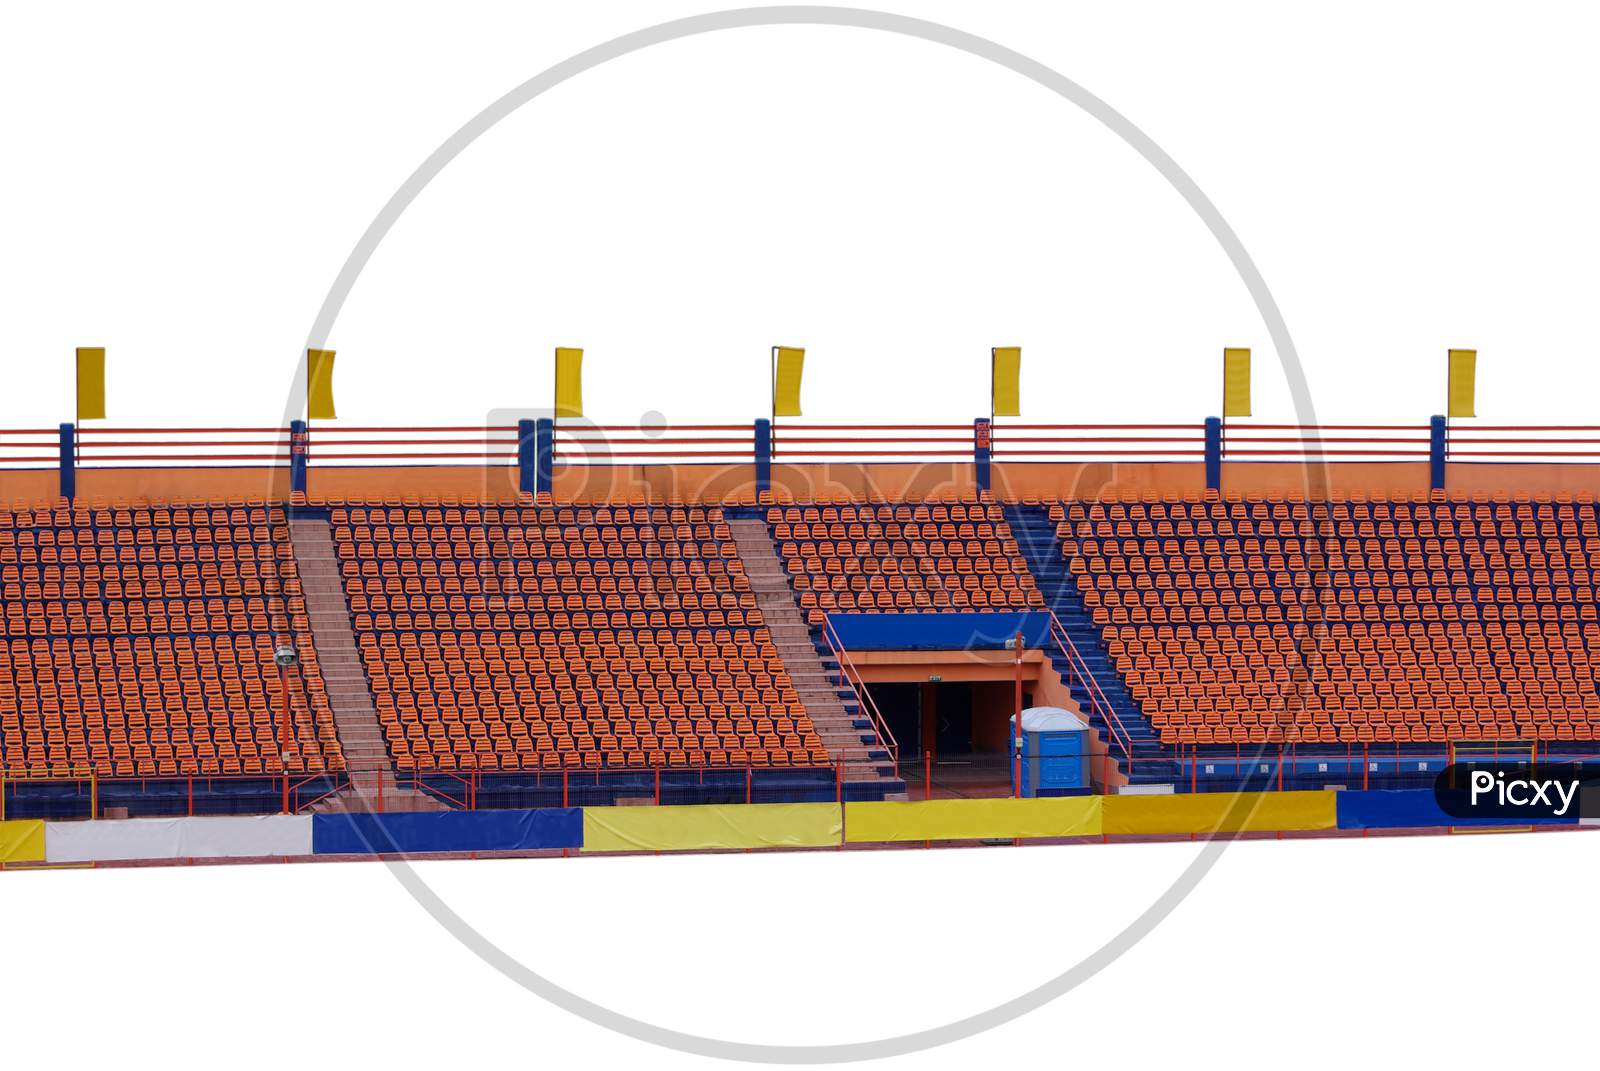 Sport Arena Empty Seats